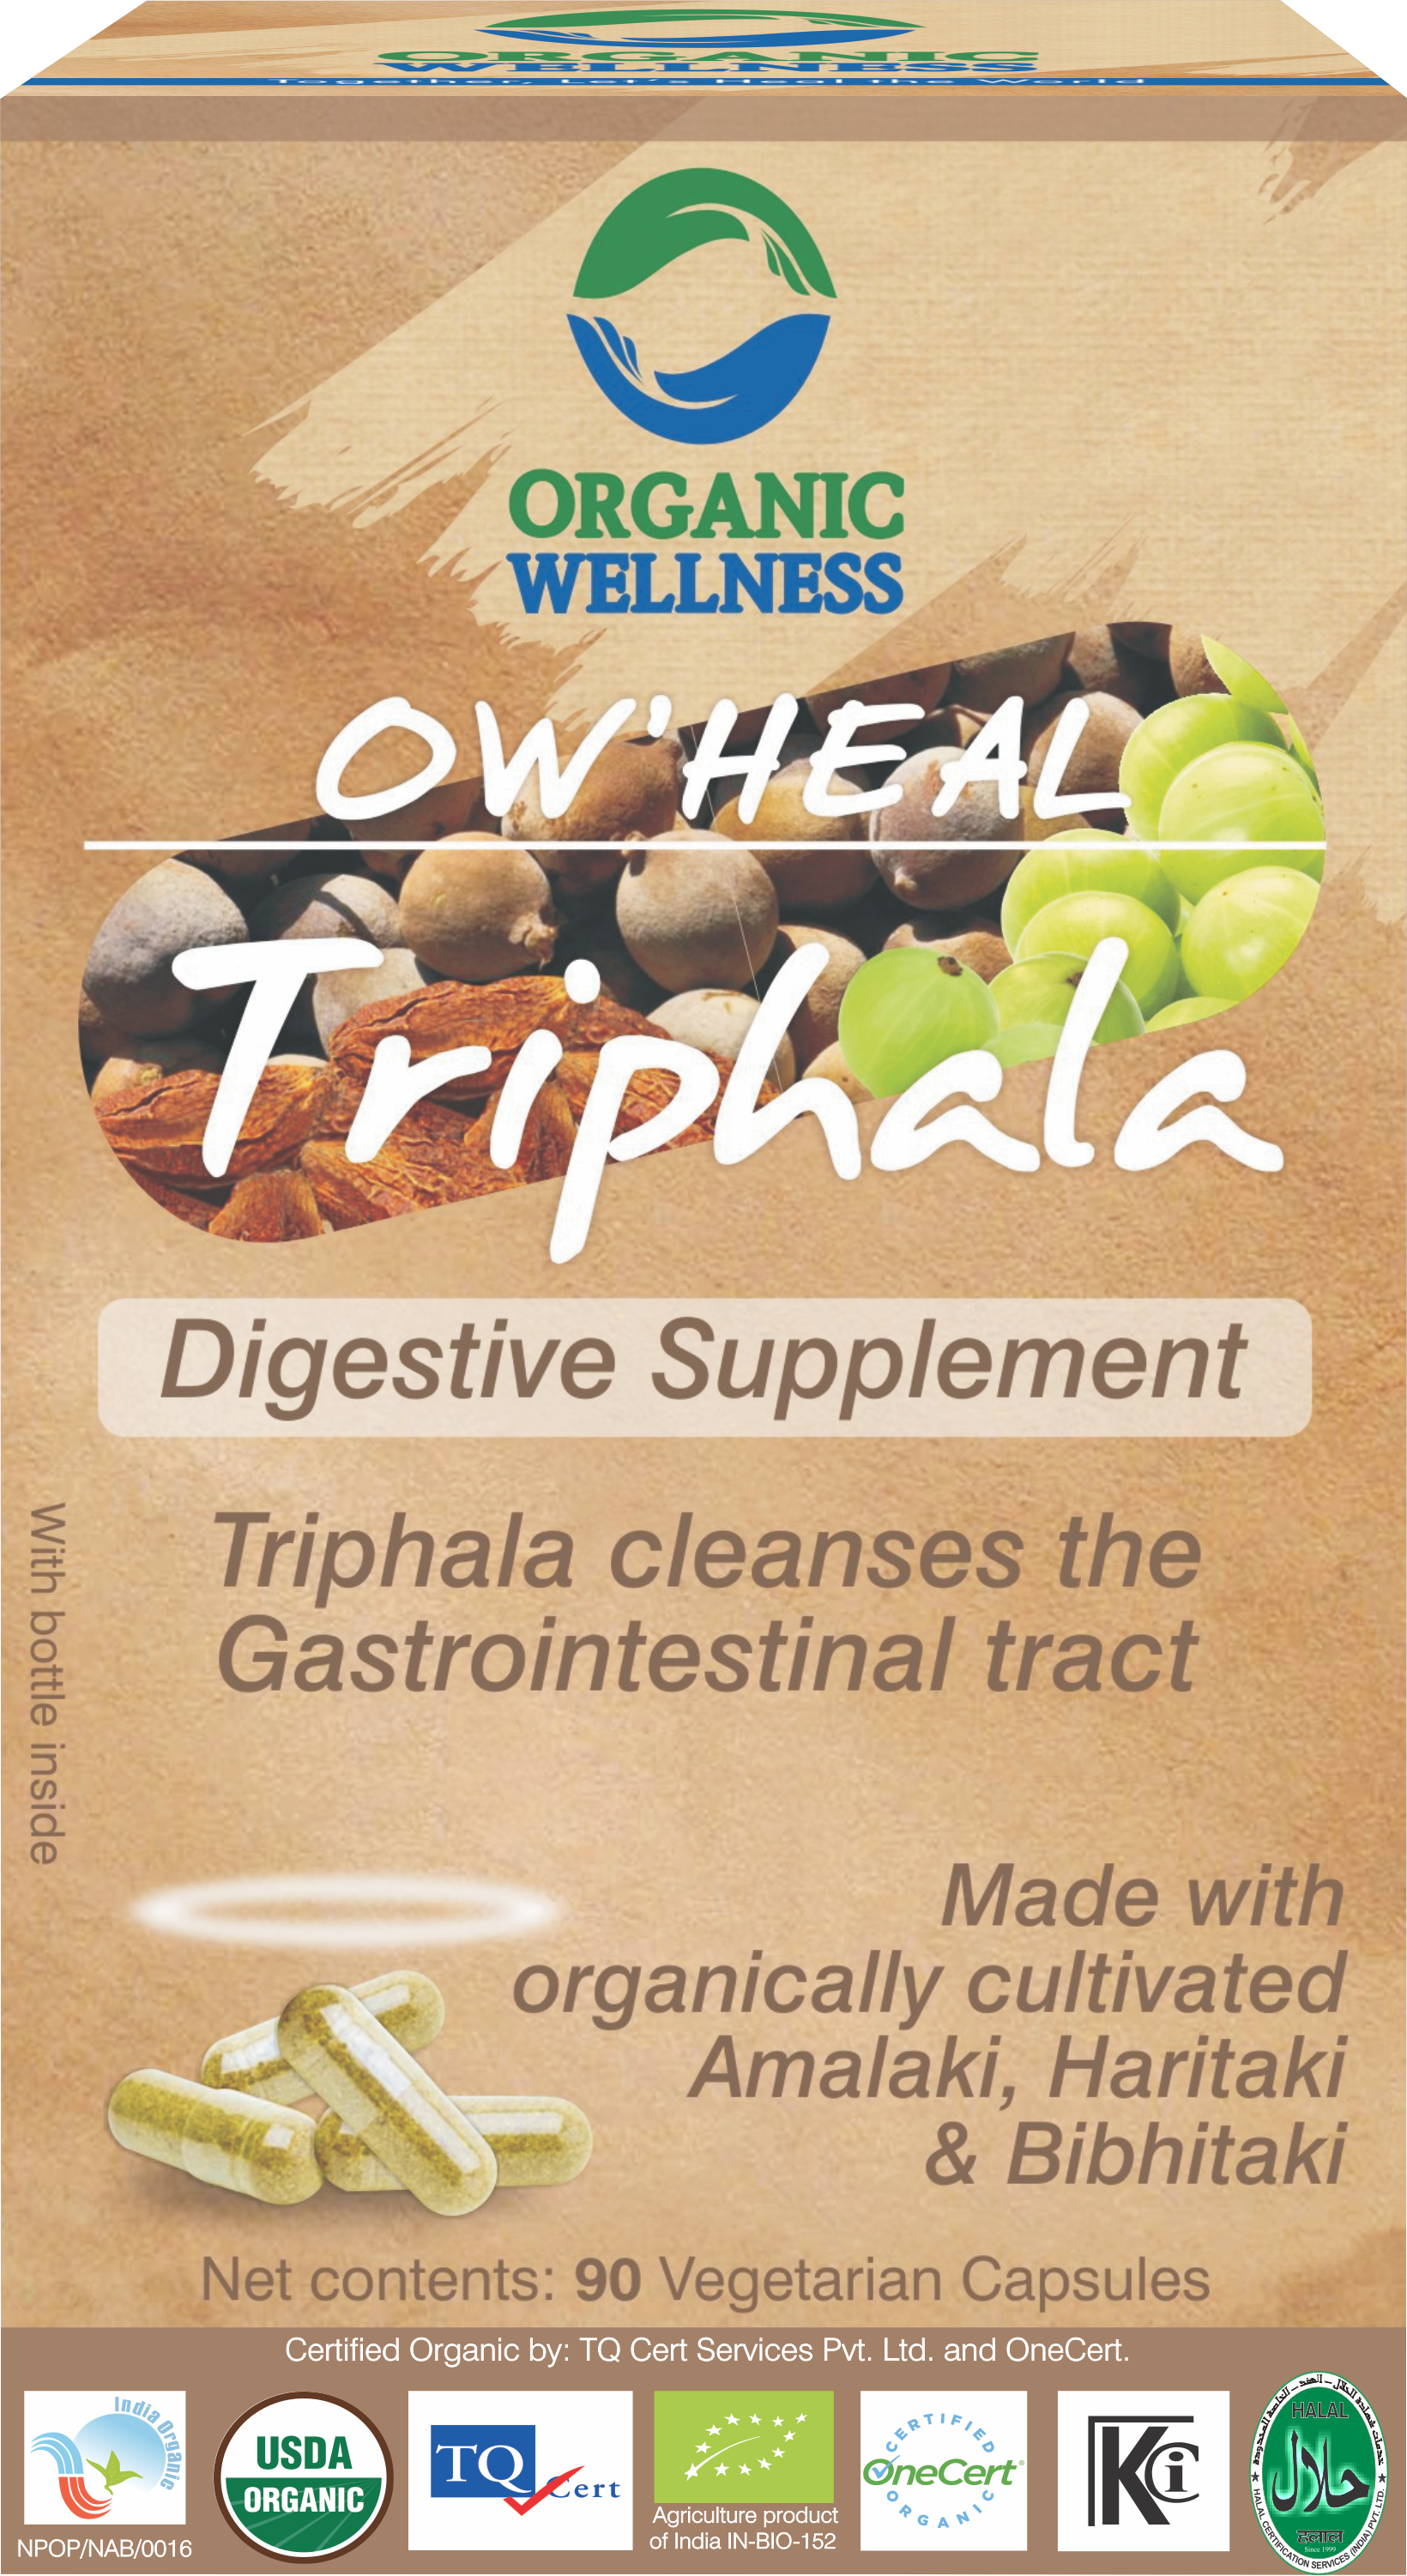 Buy Organic Wellness Heal Triphala Capsule at Best Price Online